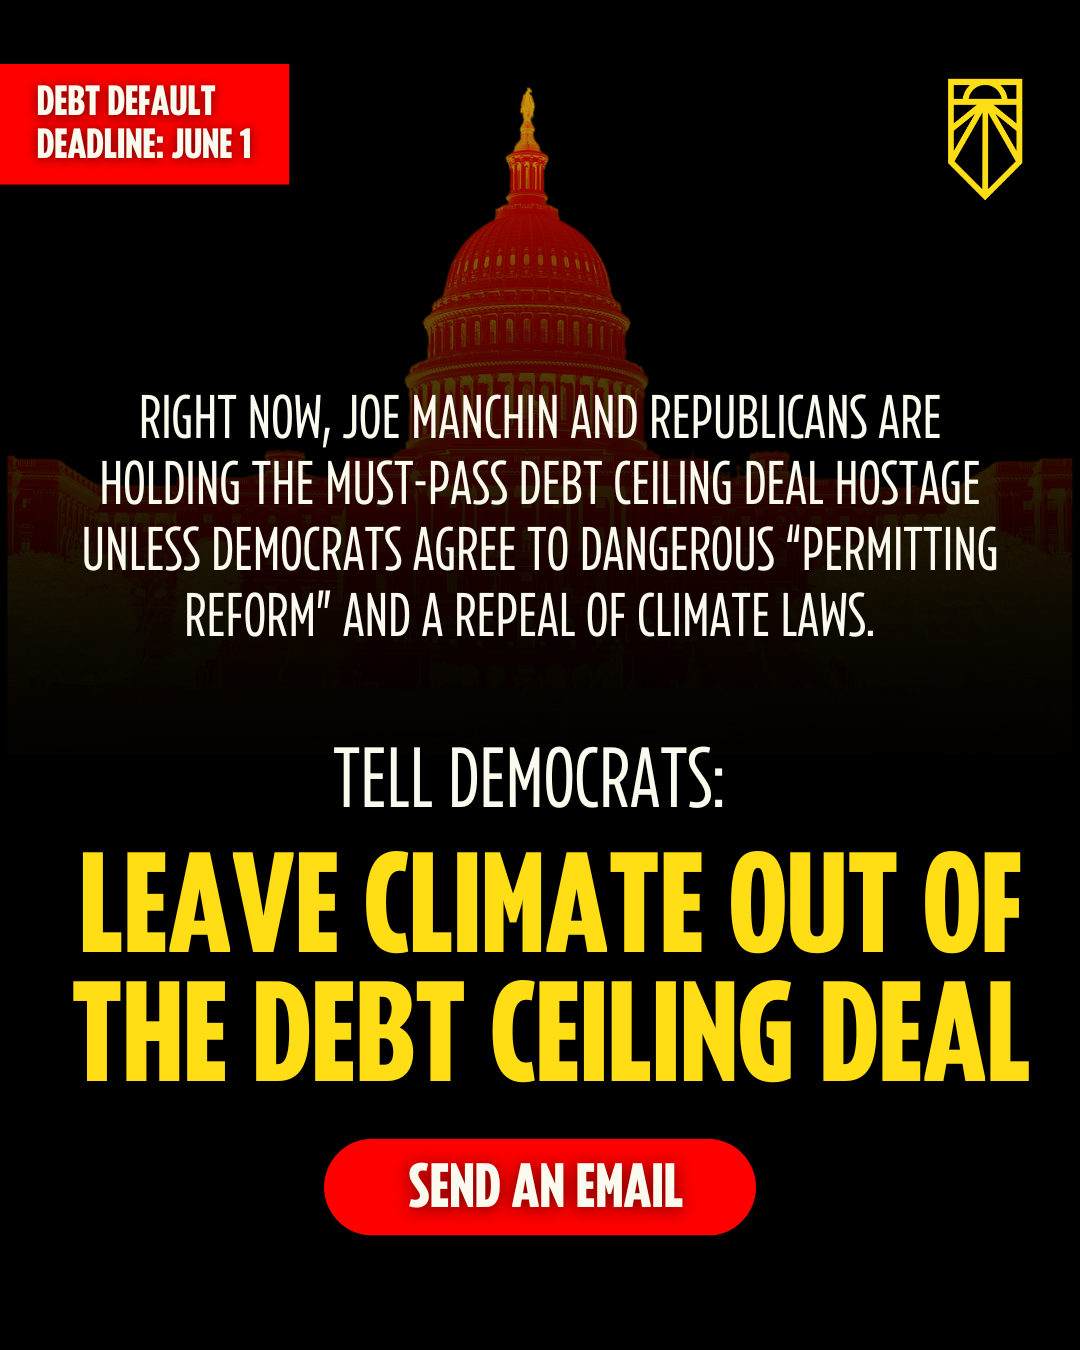 A crise climática já está aqui. Biden, Declare uma Emergência Climática. Assine a petição.